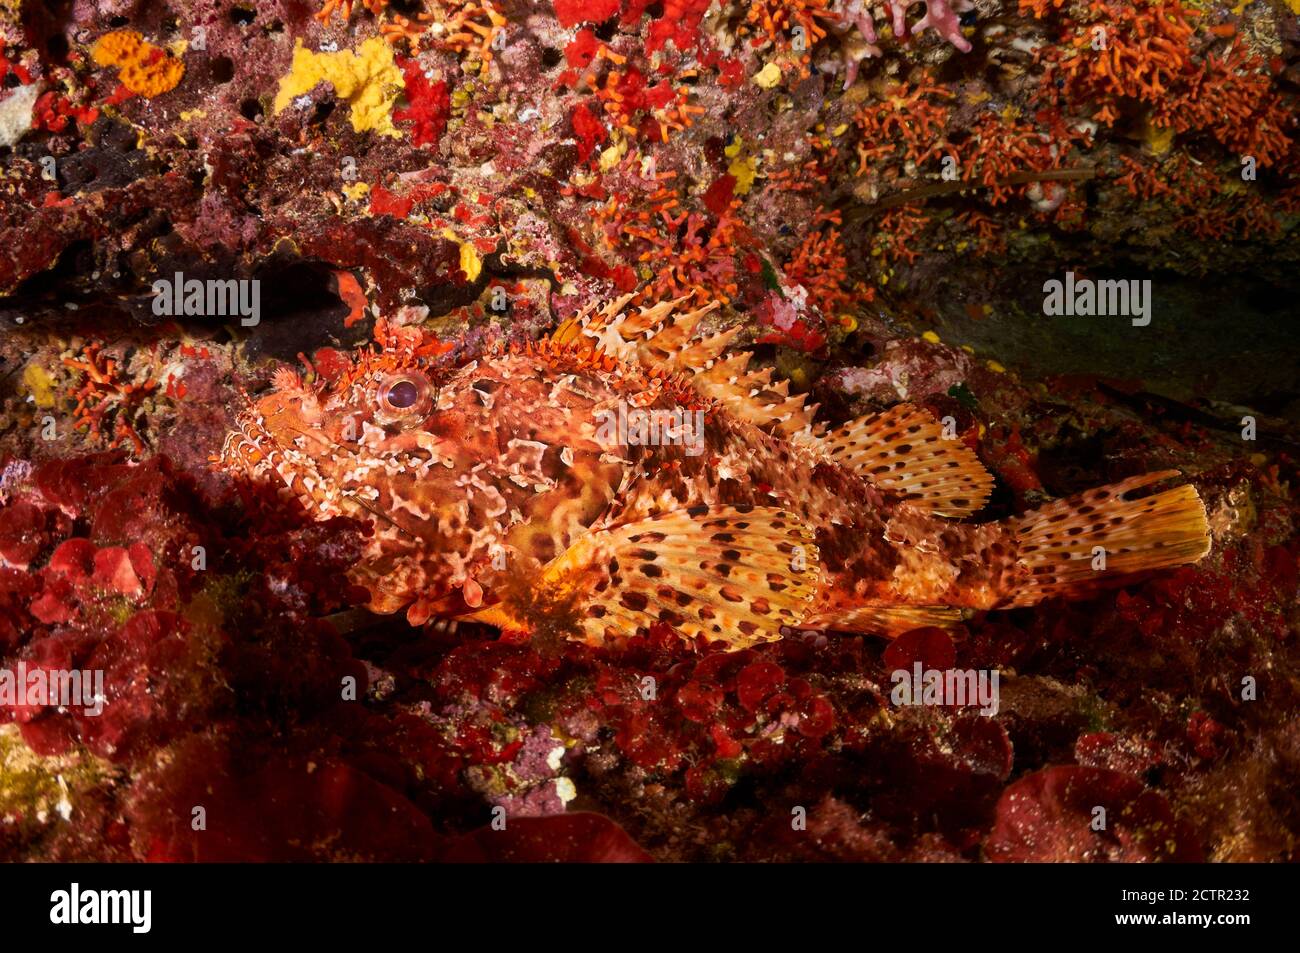 Uno scorfano rosso (Scorpaena scrofa) mimetato in una grotta subacquea nel Parco Naturale di Ses Salines (Formentera, Isole Baleari, Mar Mediterraneo) Foto Stock